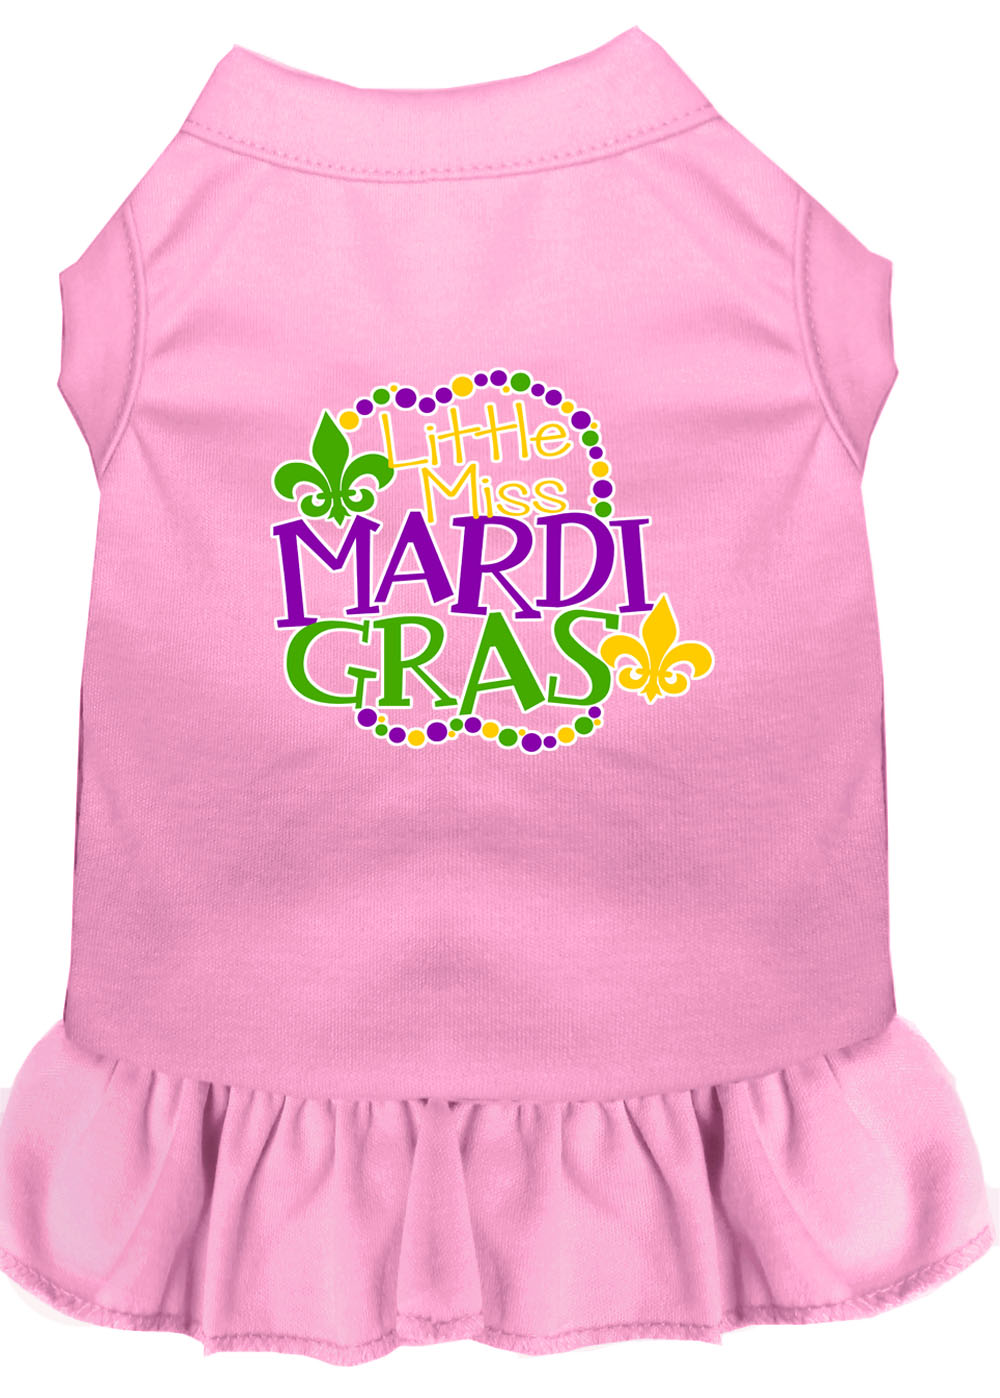 Miss Mardi Gras Screen Print Mardi Gras Dog Dress Light Pink XL